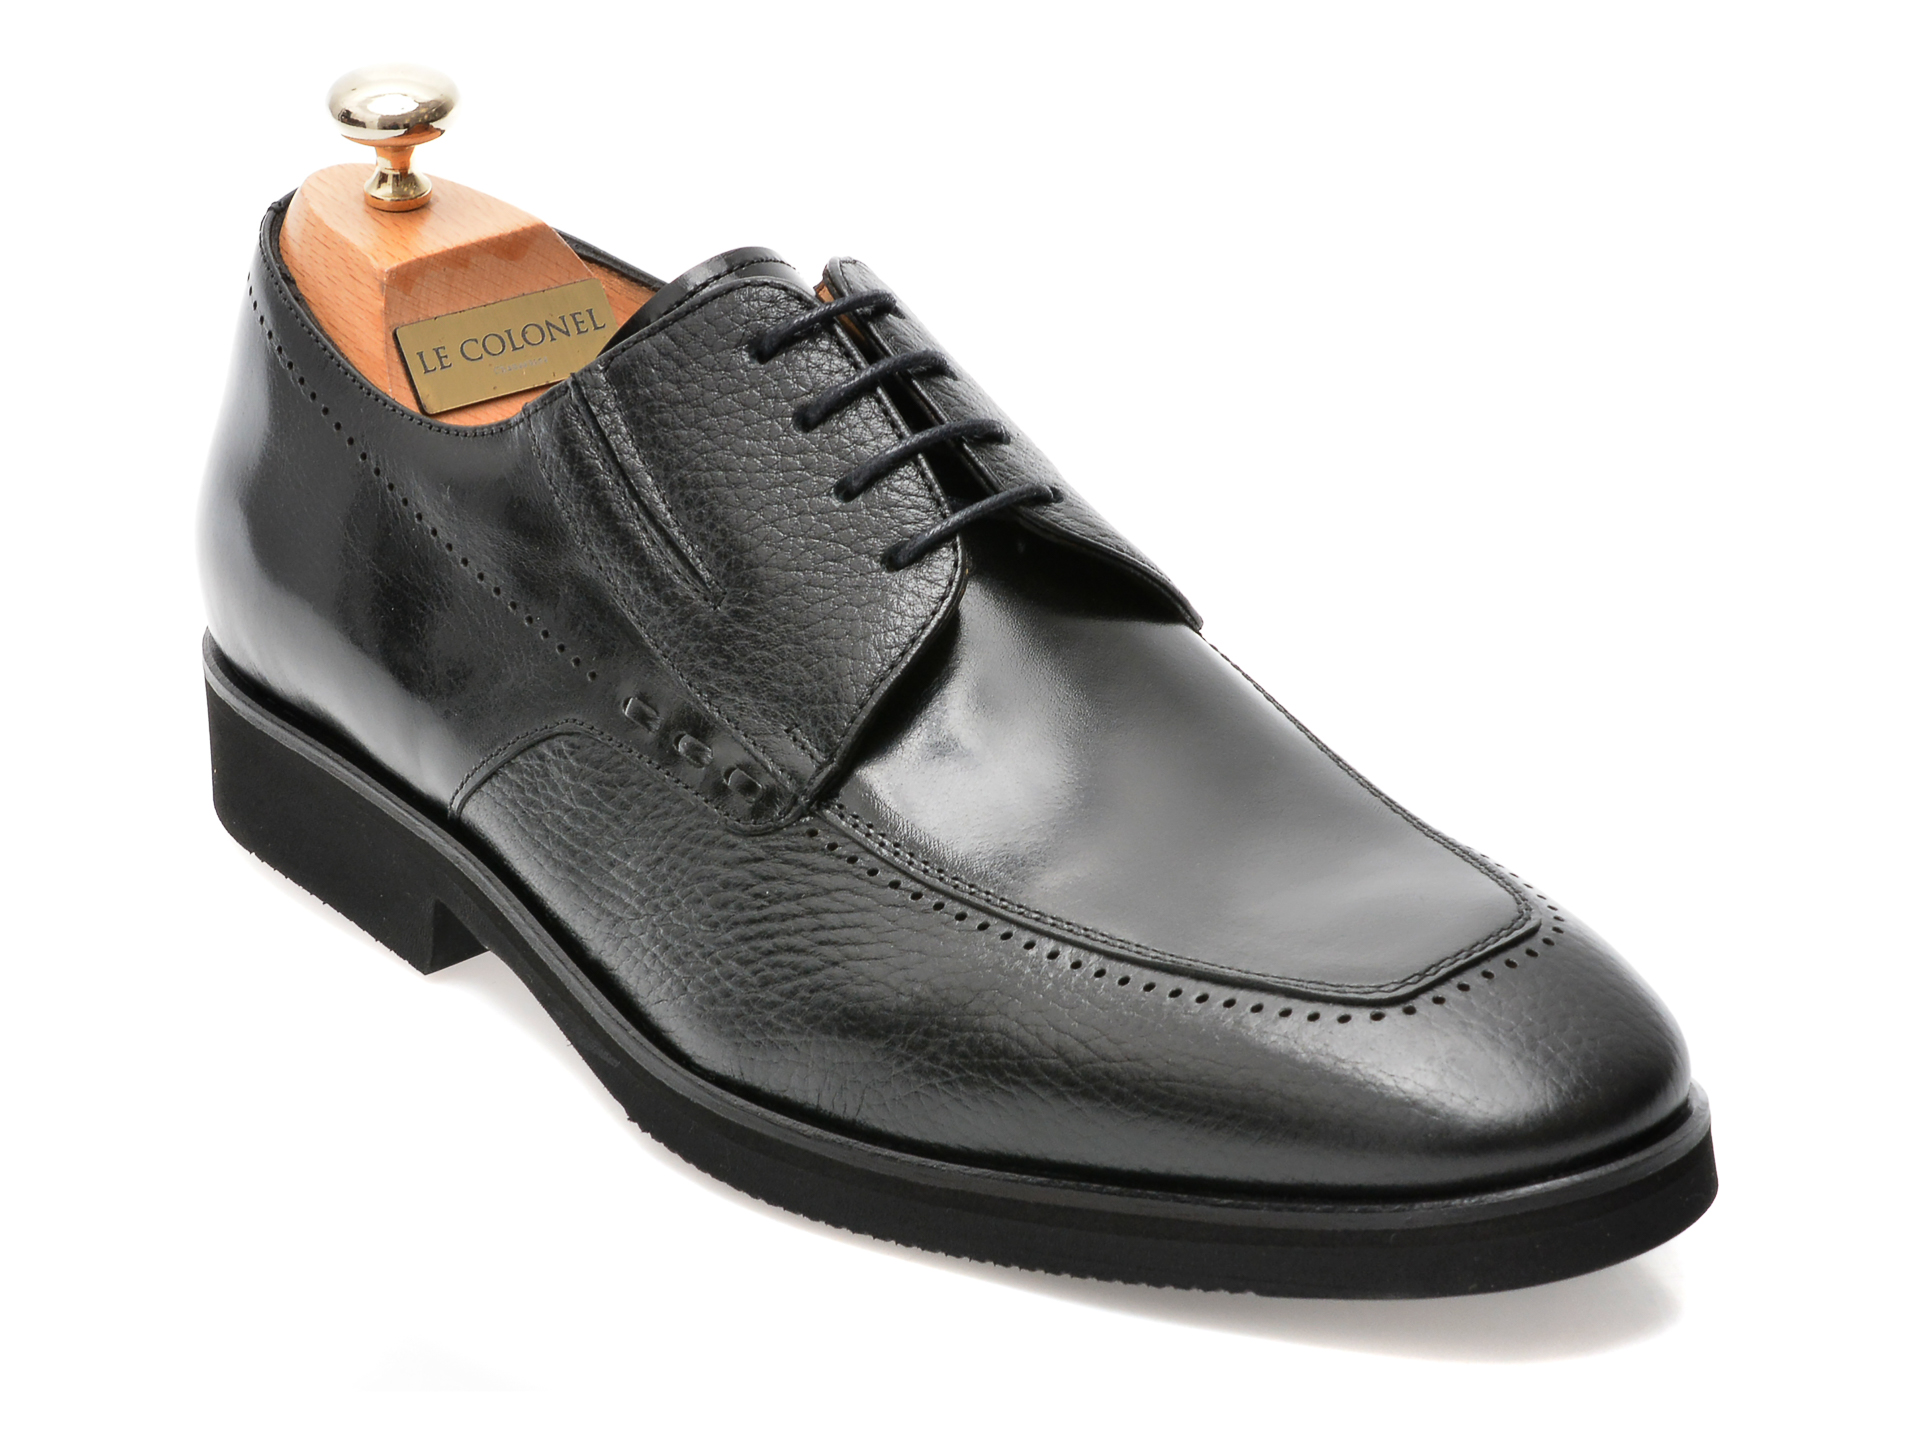 Pantofi LE COLONEL negri, 48701, din piele naturala Incaltaminte Barbati 2023-09-26